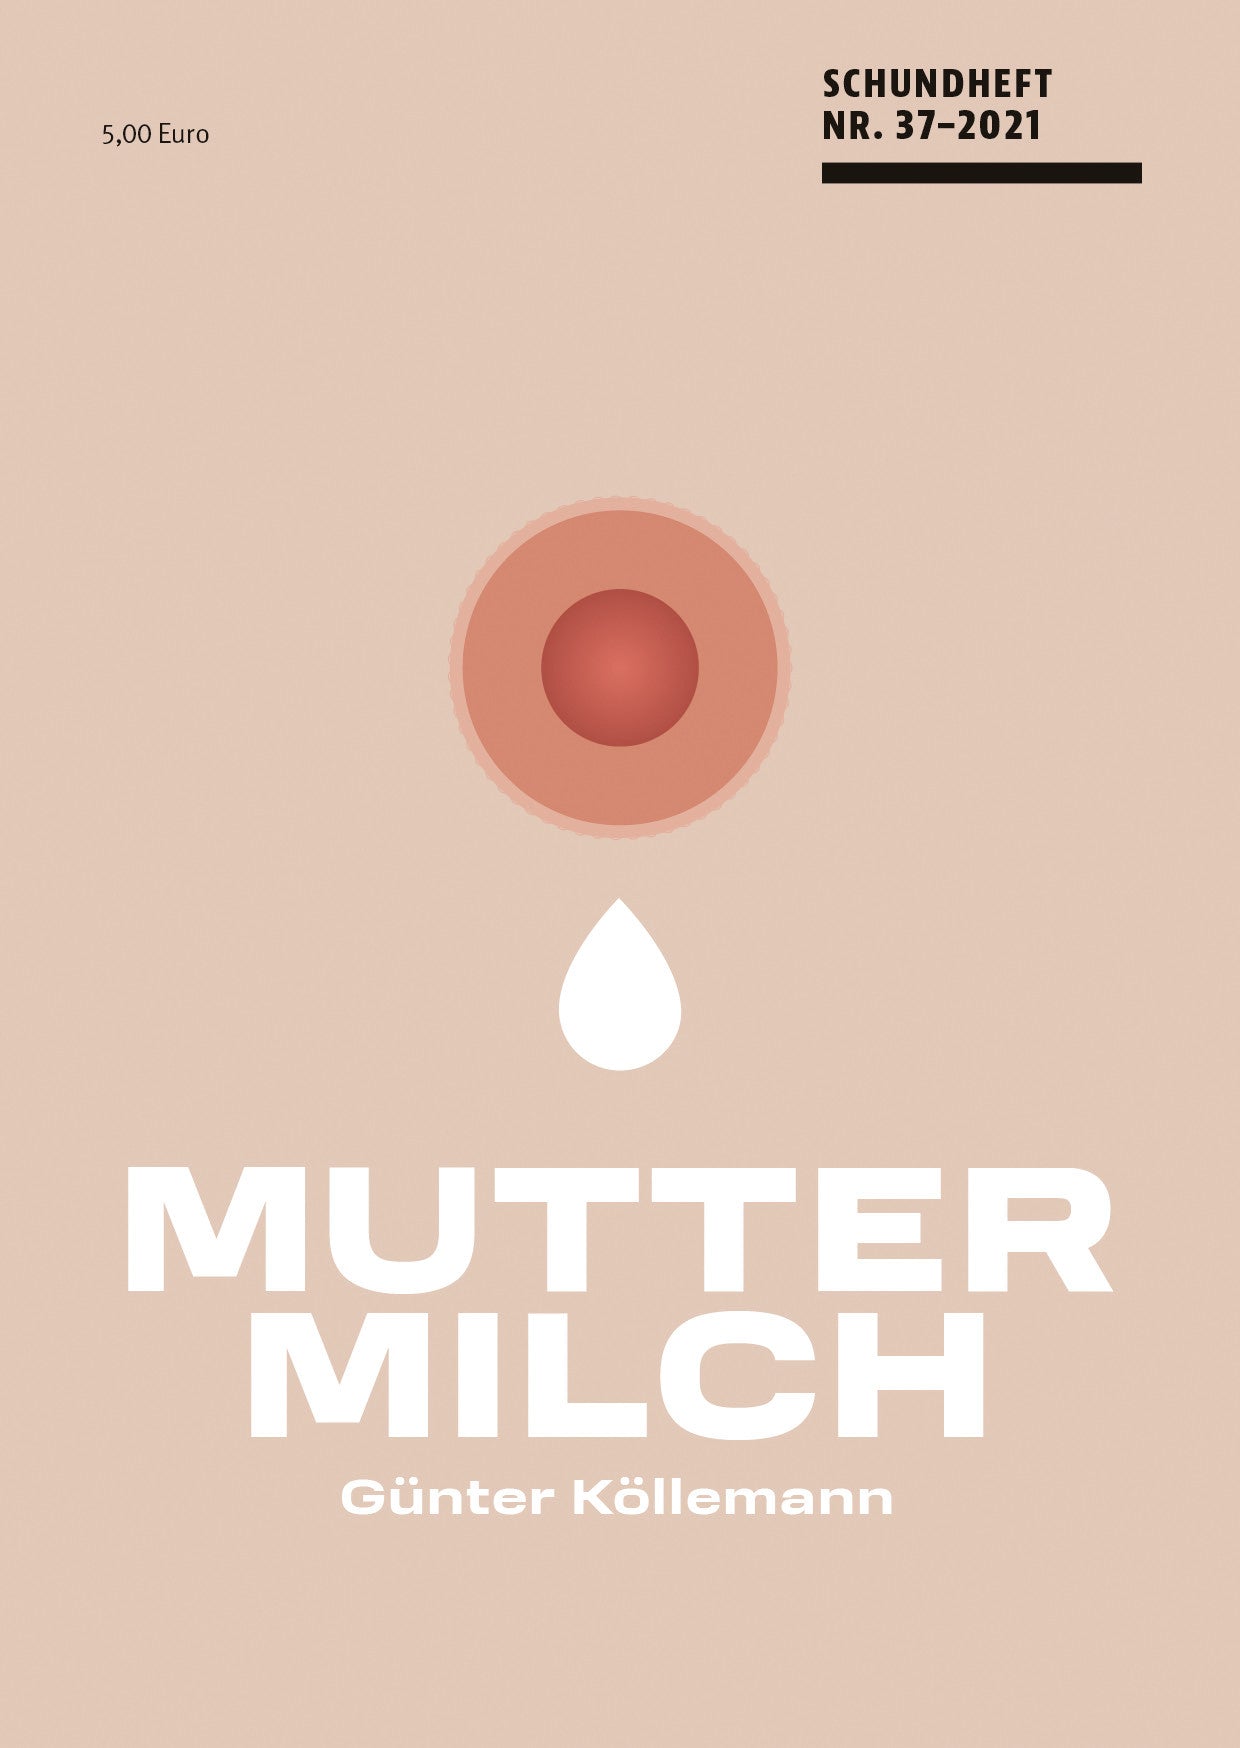 Schundheft Nr. 37 "Muttermilch"